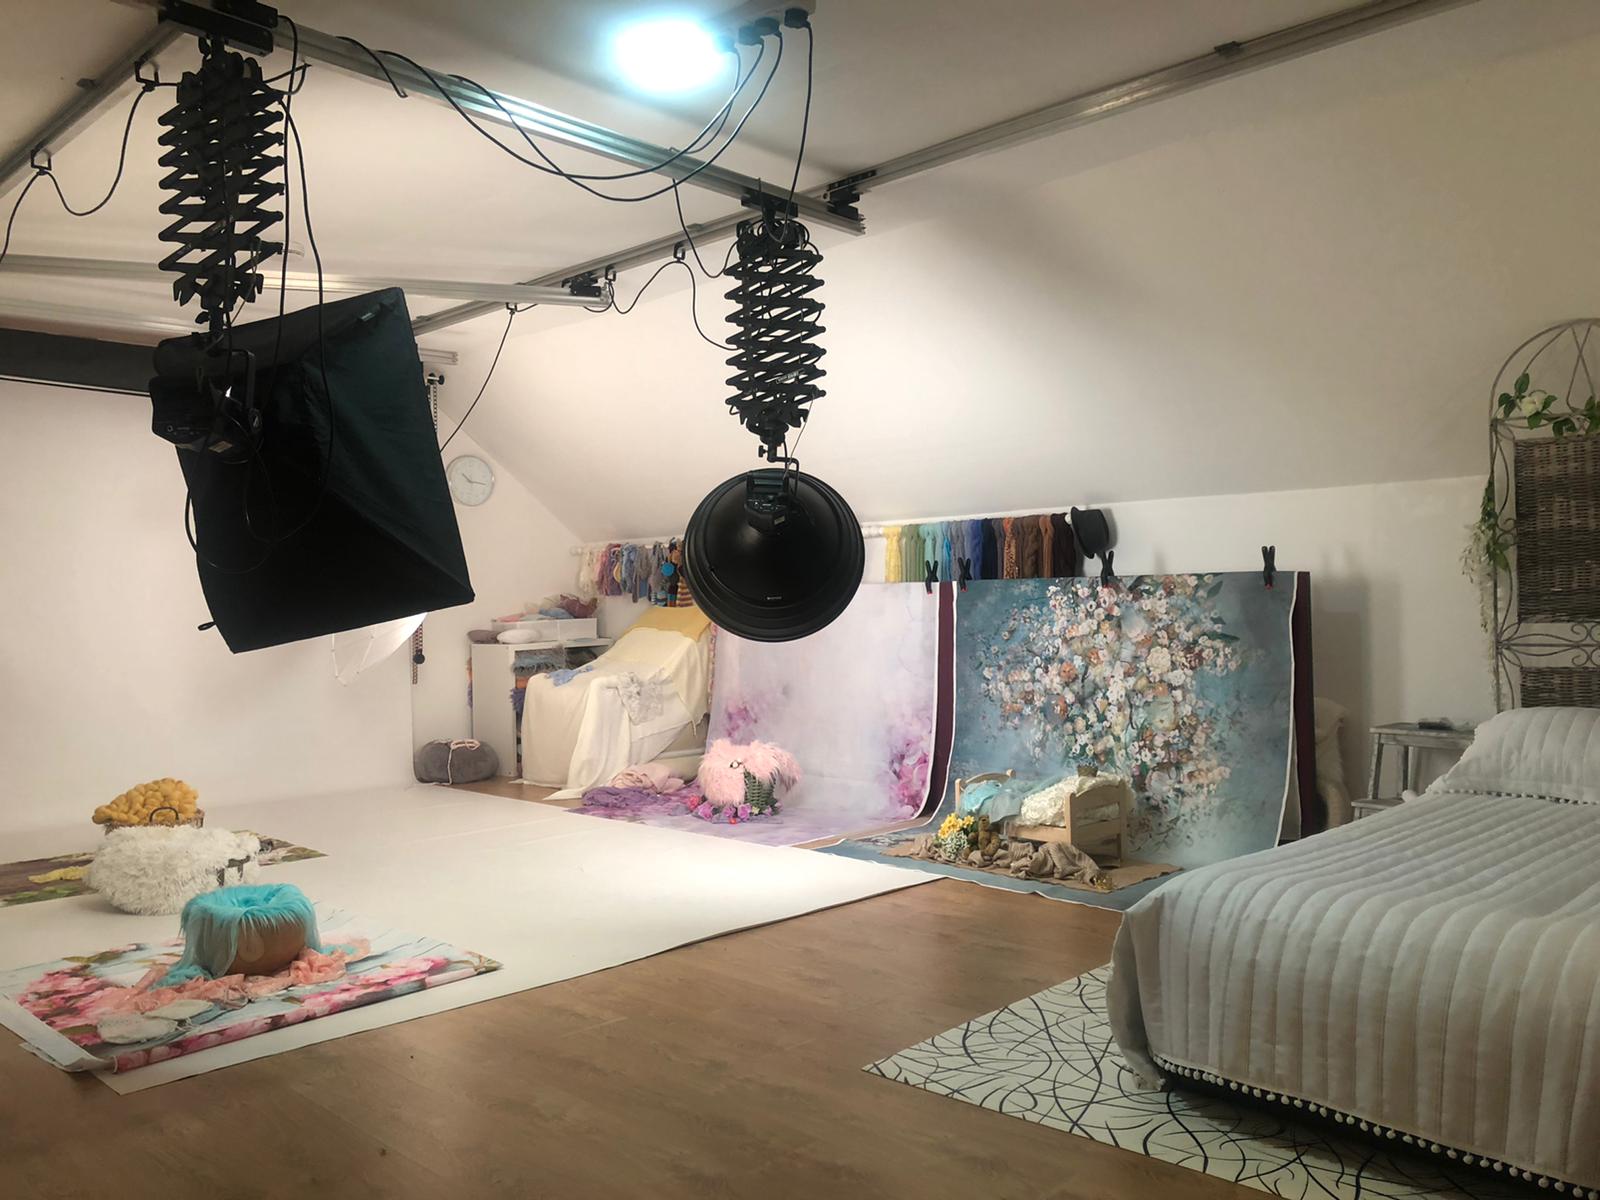 Example of photoshoot studio in Newry